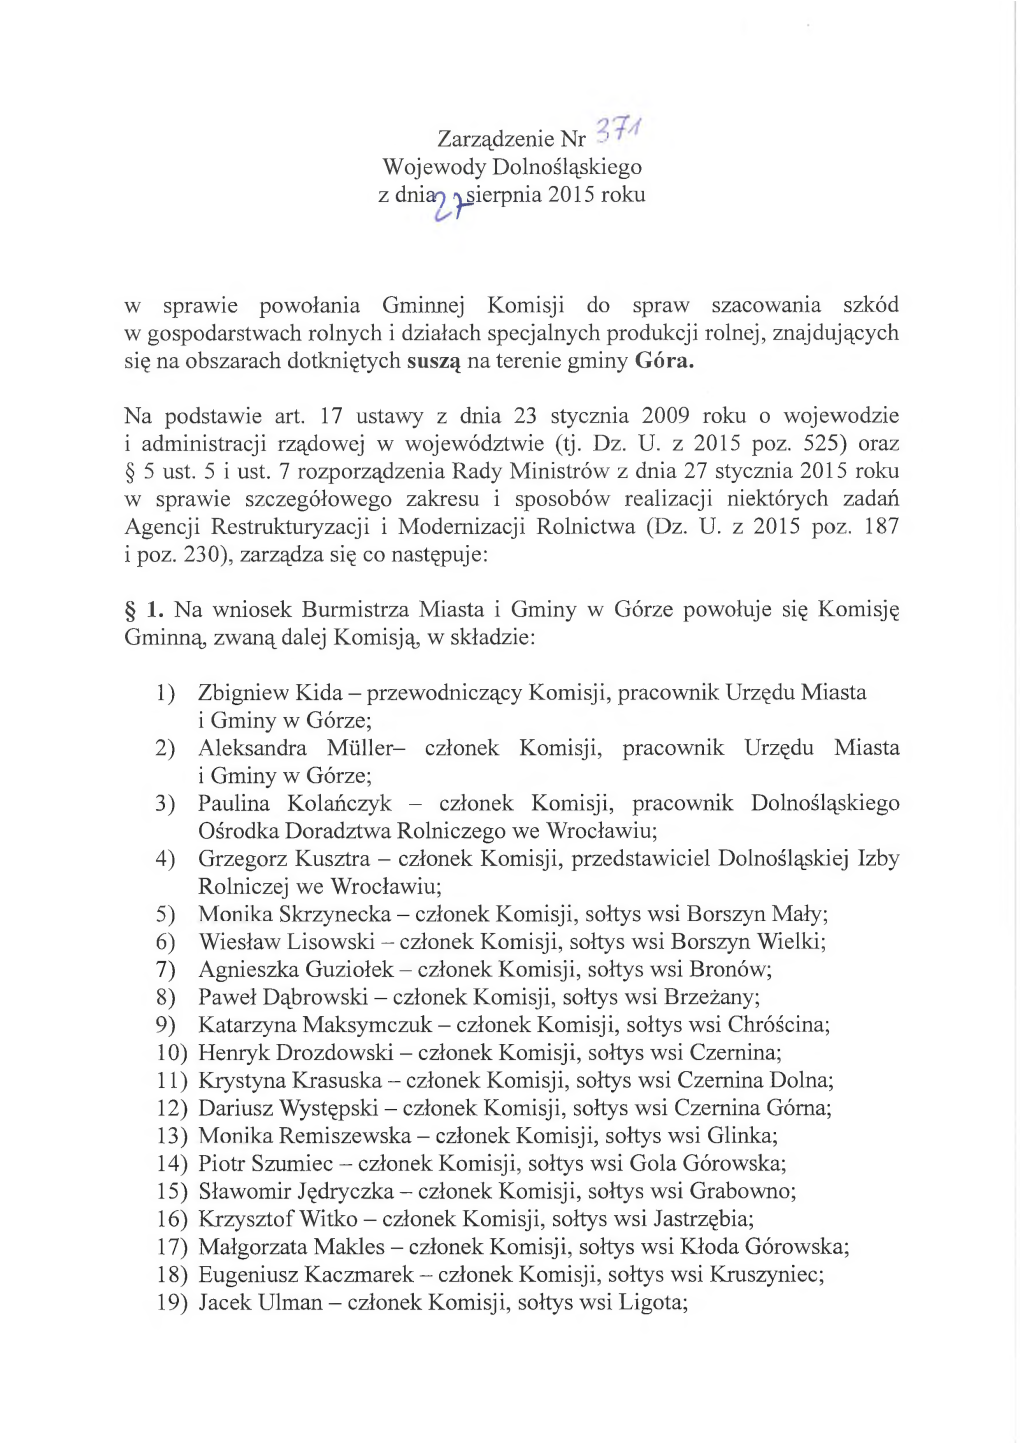 Zarządzenie Nr - ’ Wojewody Dolnośląskiego Z Dniaoia) Ipierpma^Sierpnia 2015 Roku